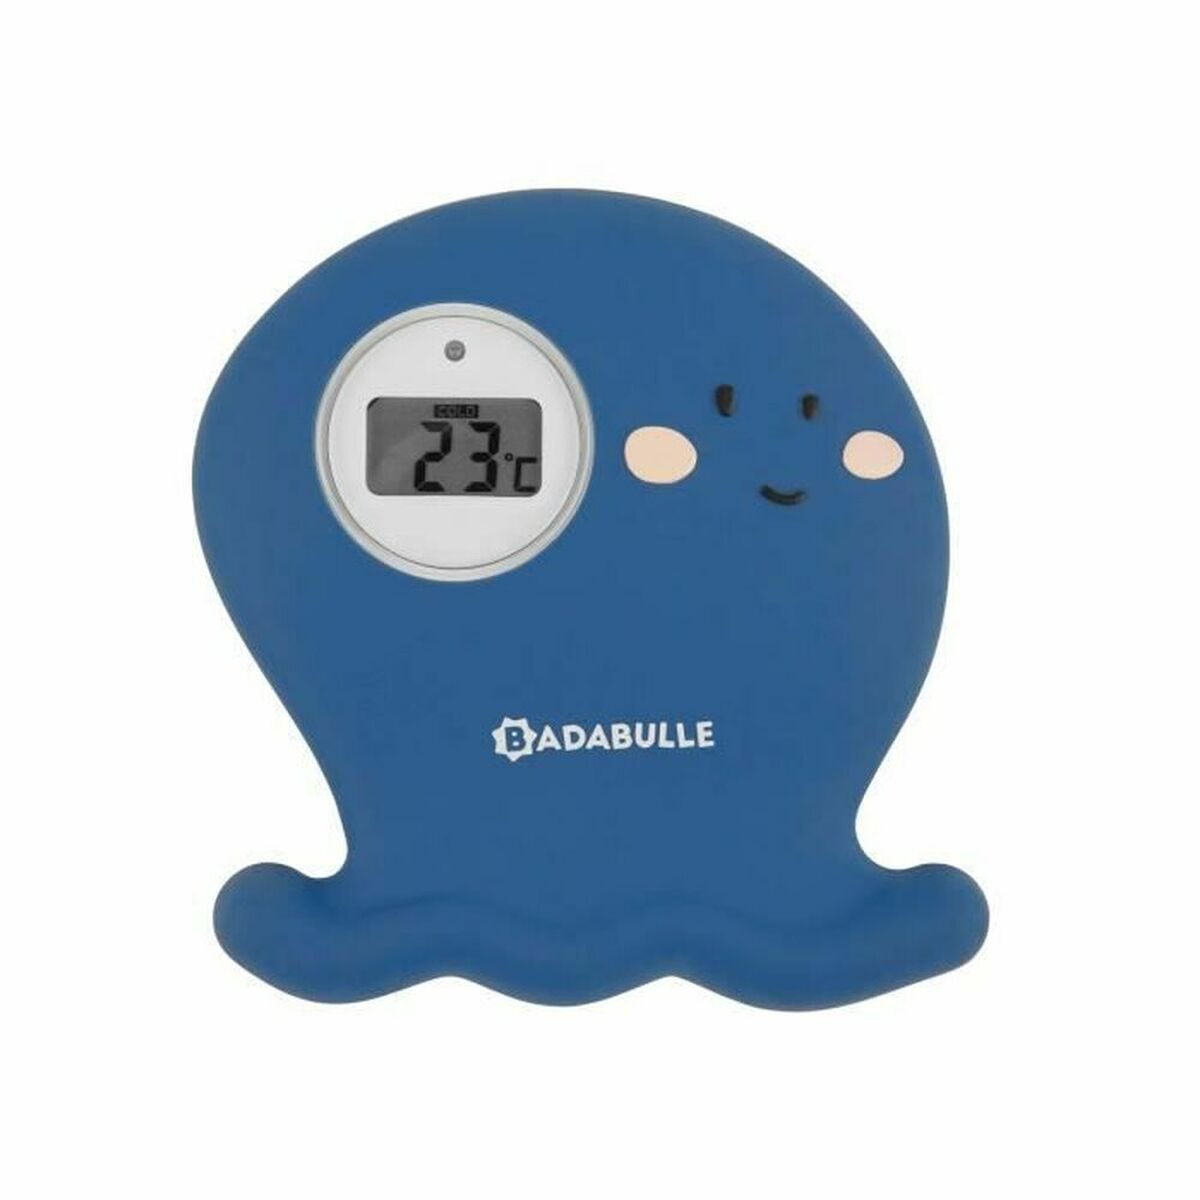 Digital Termometer Badabulle B037003 Blå